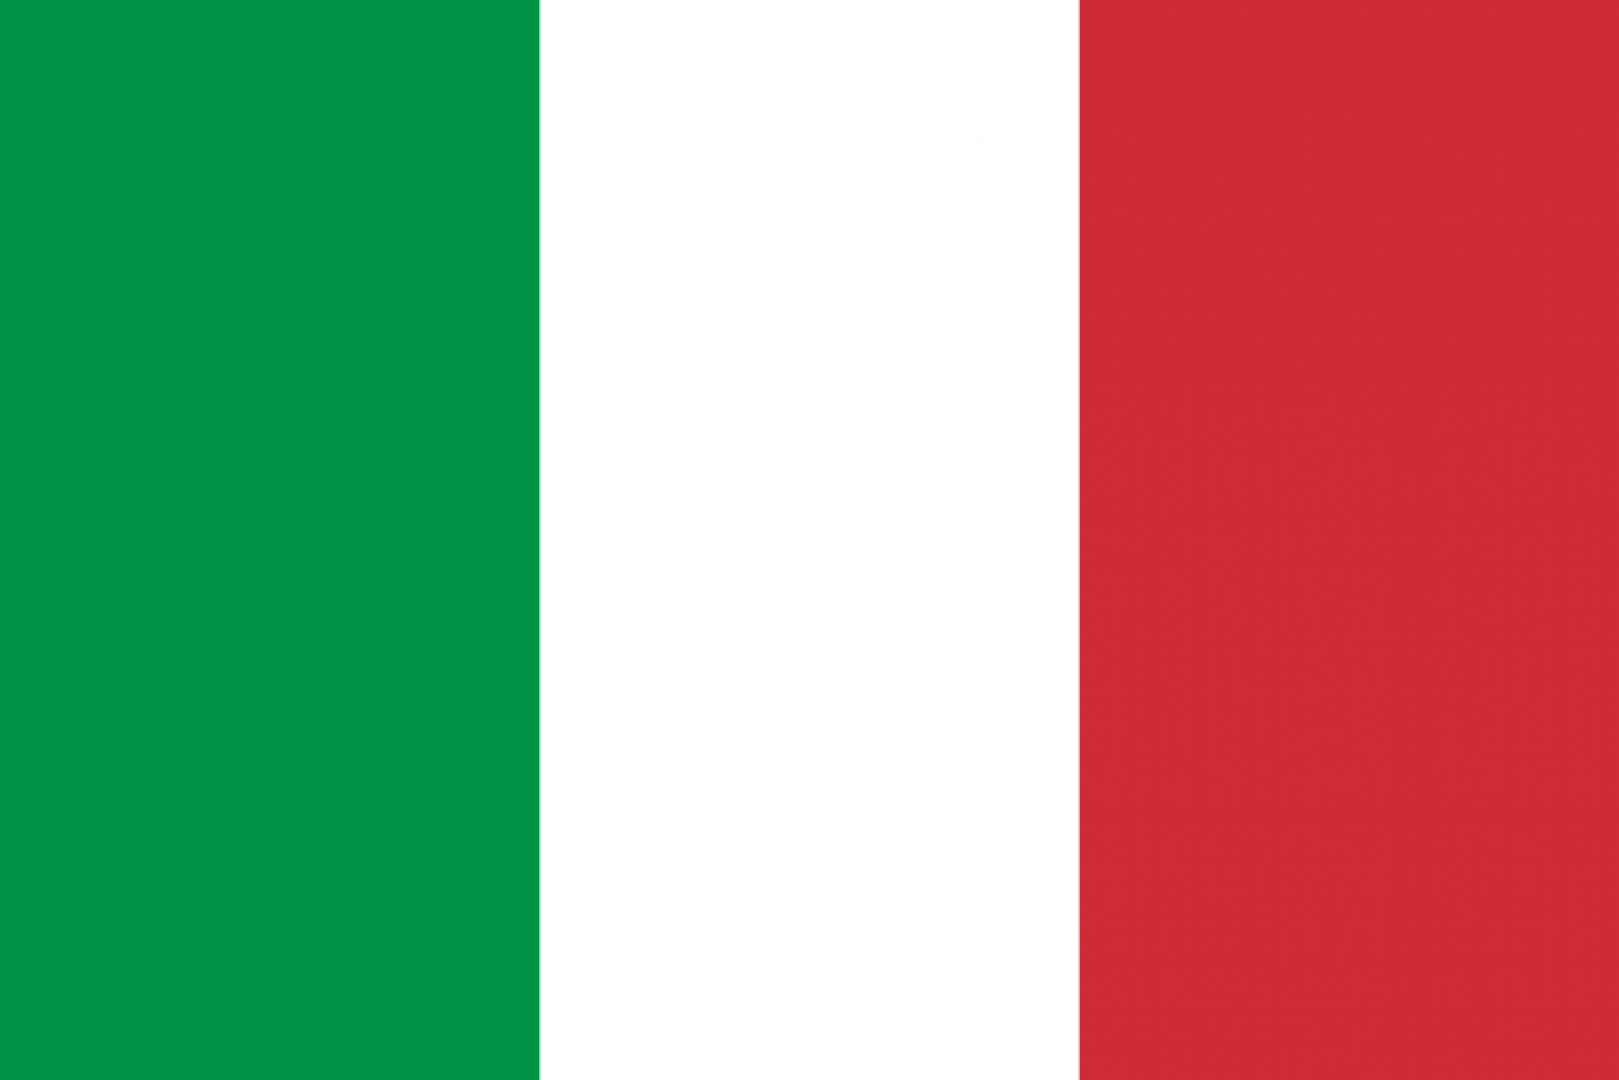 Armia Włoska